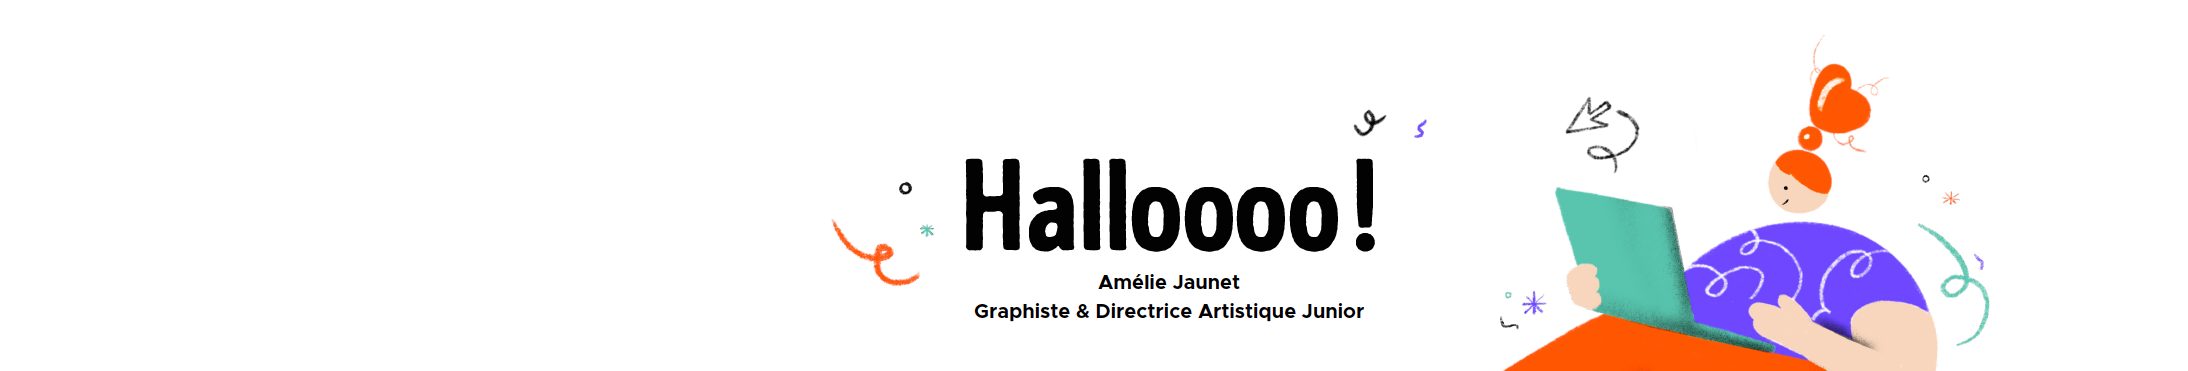 Amélie JAUNET's profile banner